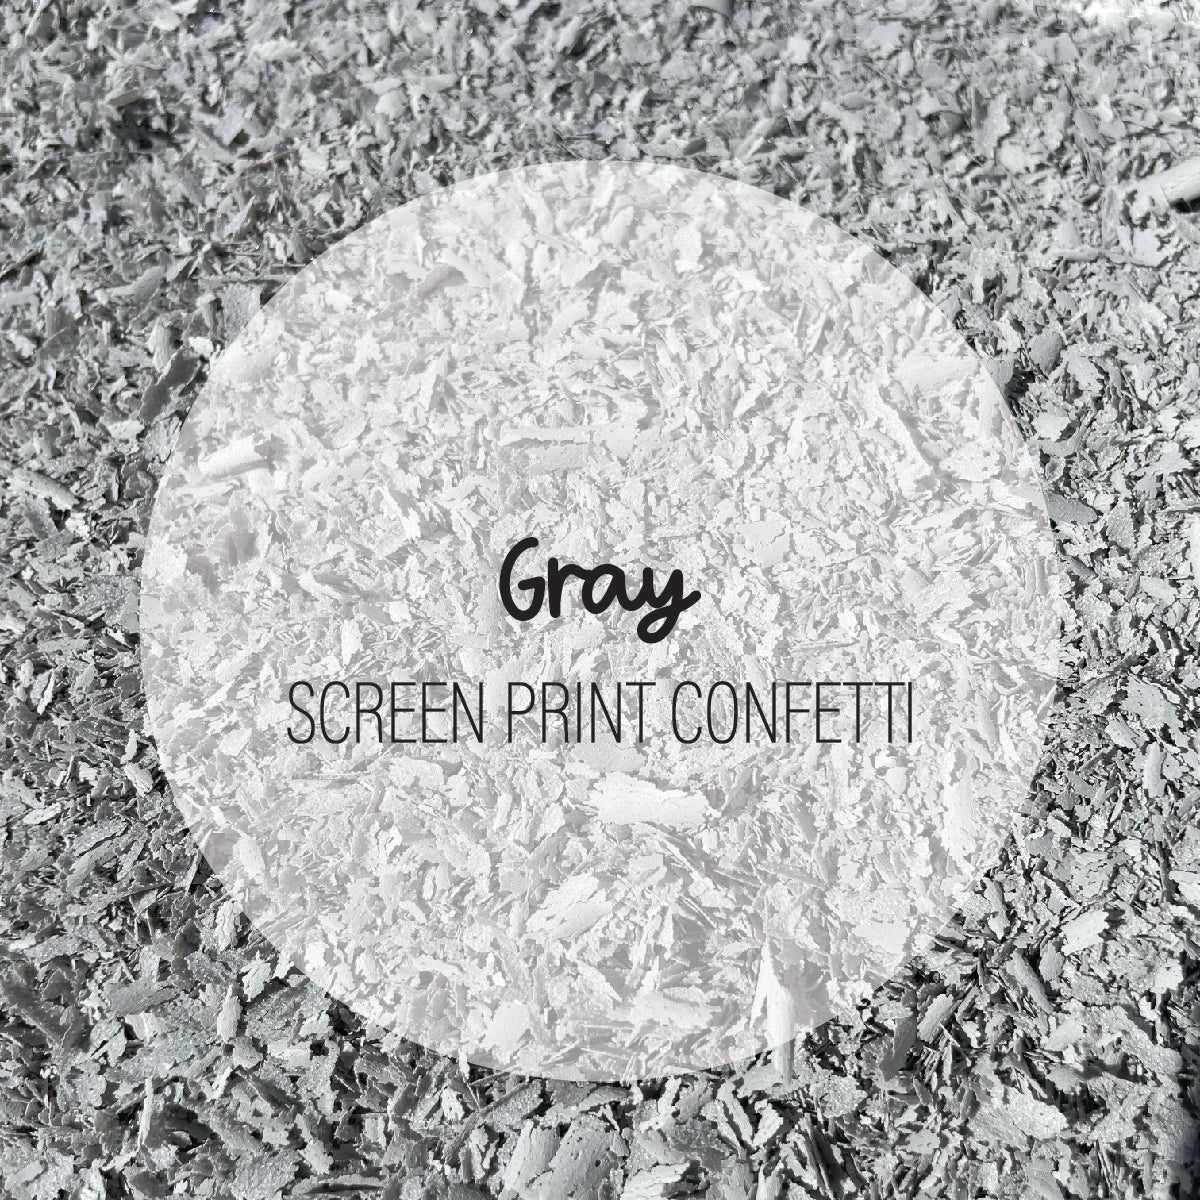 Gray Screen Print Confetti